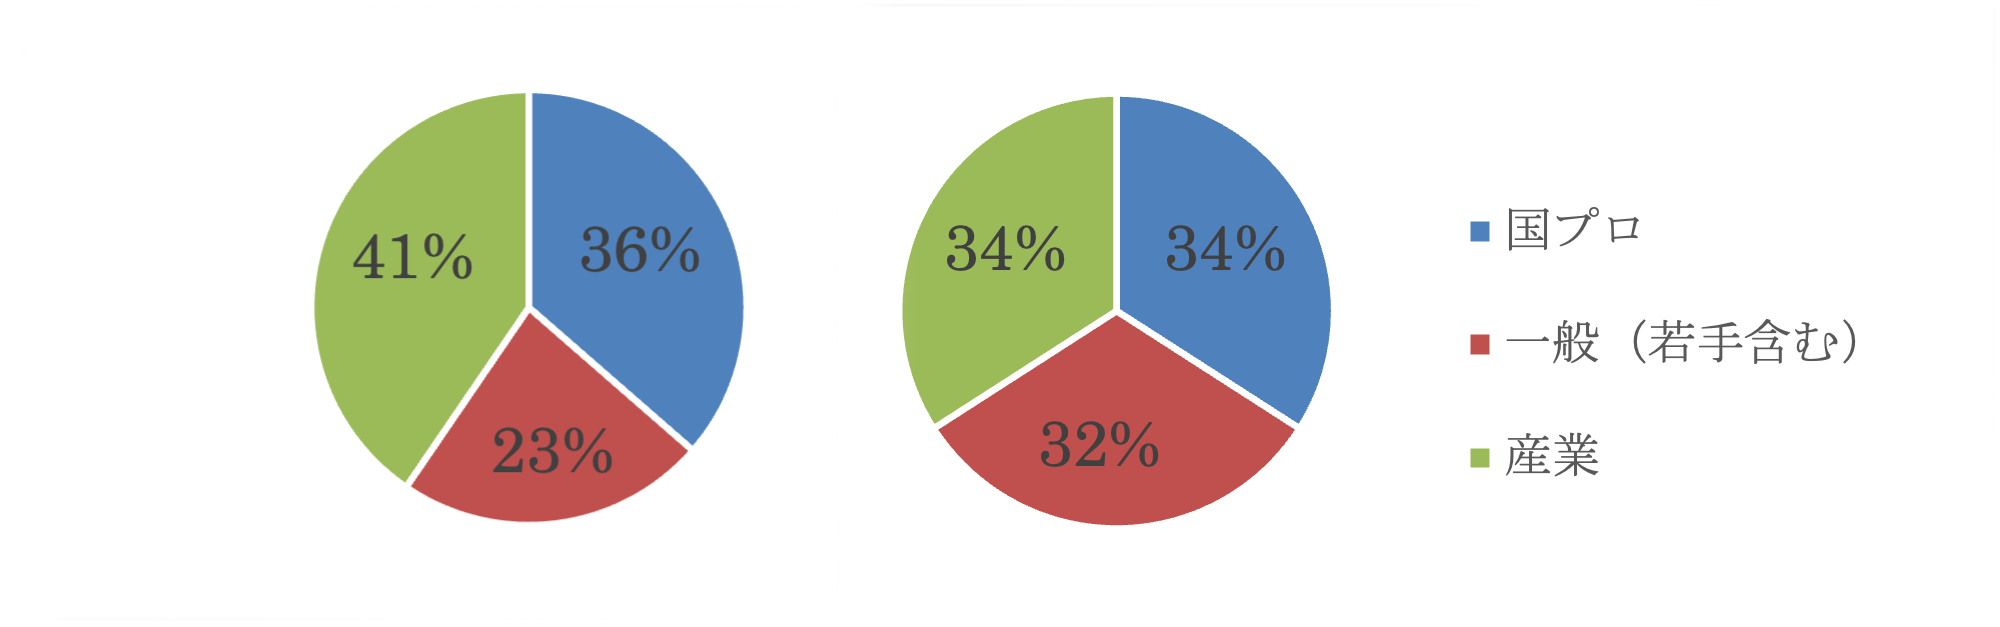 図3　実施した高度化支援等の比率<br>（左：「京」（2012-2019年度）、右：「富岳」（2020-2021年度）<br>なお、「国プロ」は、「京」においては、HPCI戦略プログラム課題およびポスト「京」研究開発枠の重点課題／萌芽的課題、「富岳」においては、「富岳」成果創出加速プログラム課題を指す。